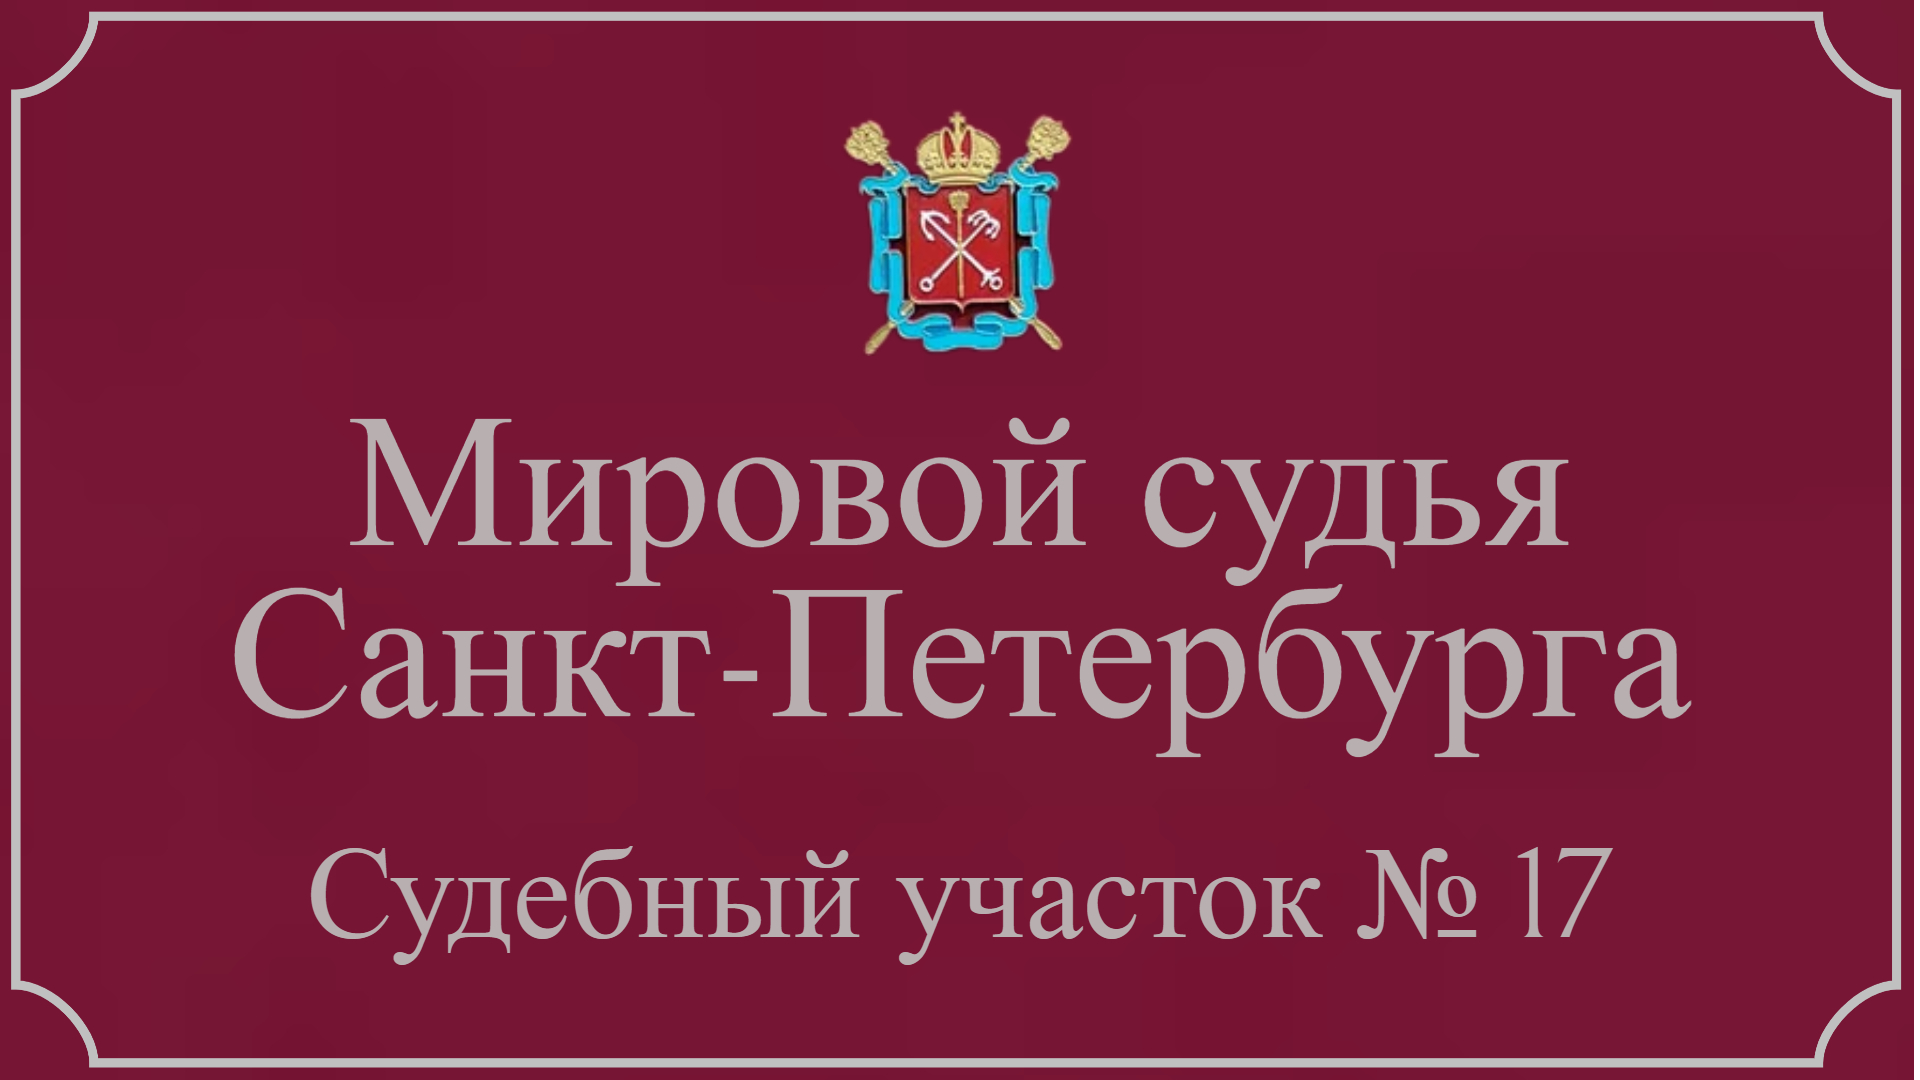 Информация по 17 судебному участку в Санкт-Петербурге.